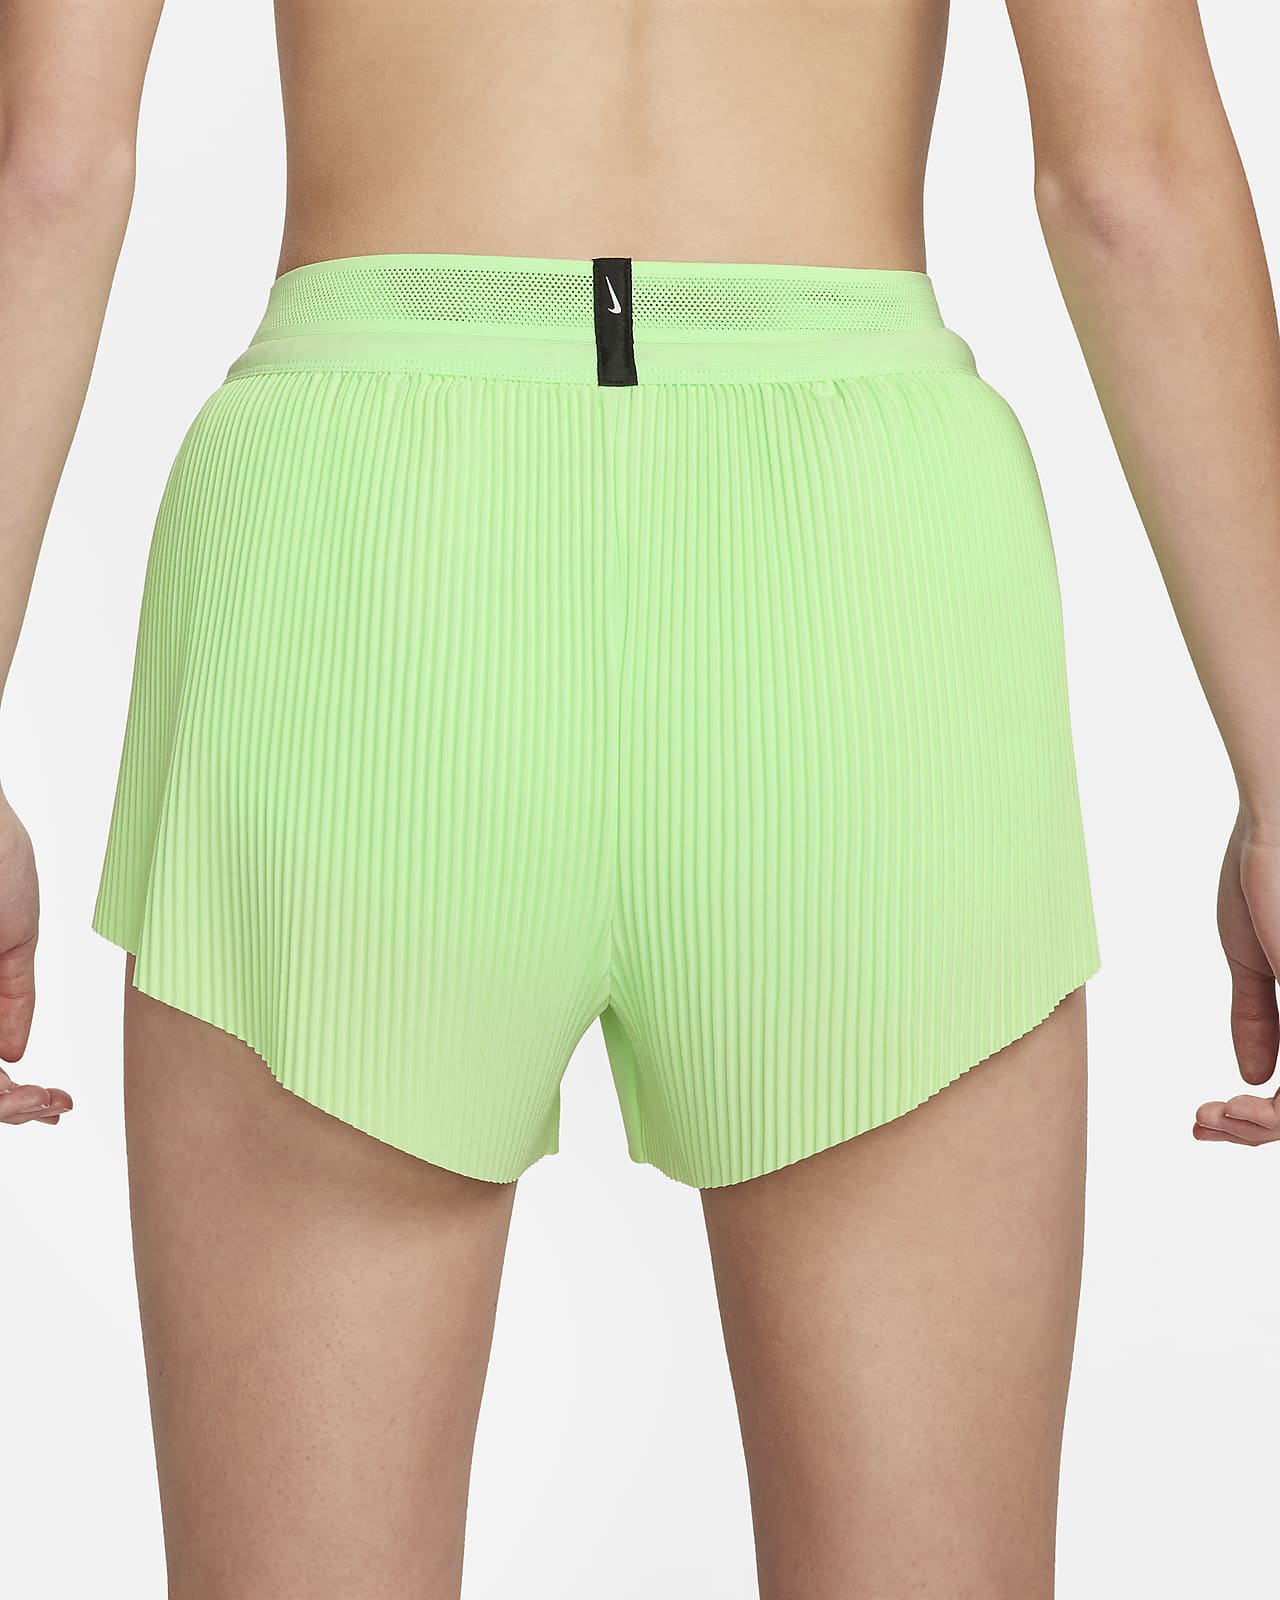 Girls: Off To A Good Start Green Running Shorts – Shop the Mint